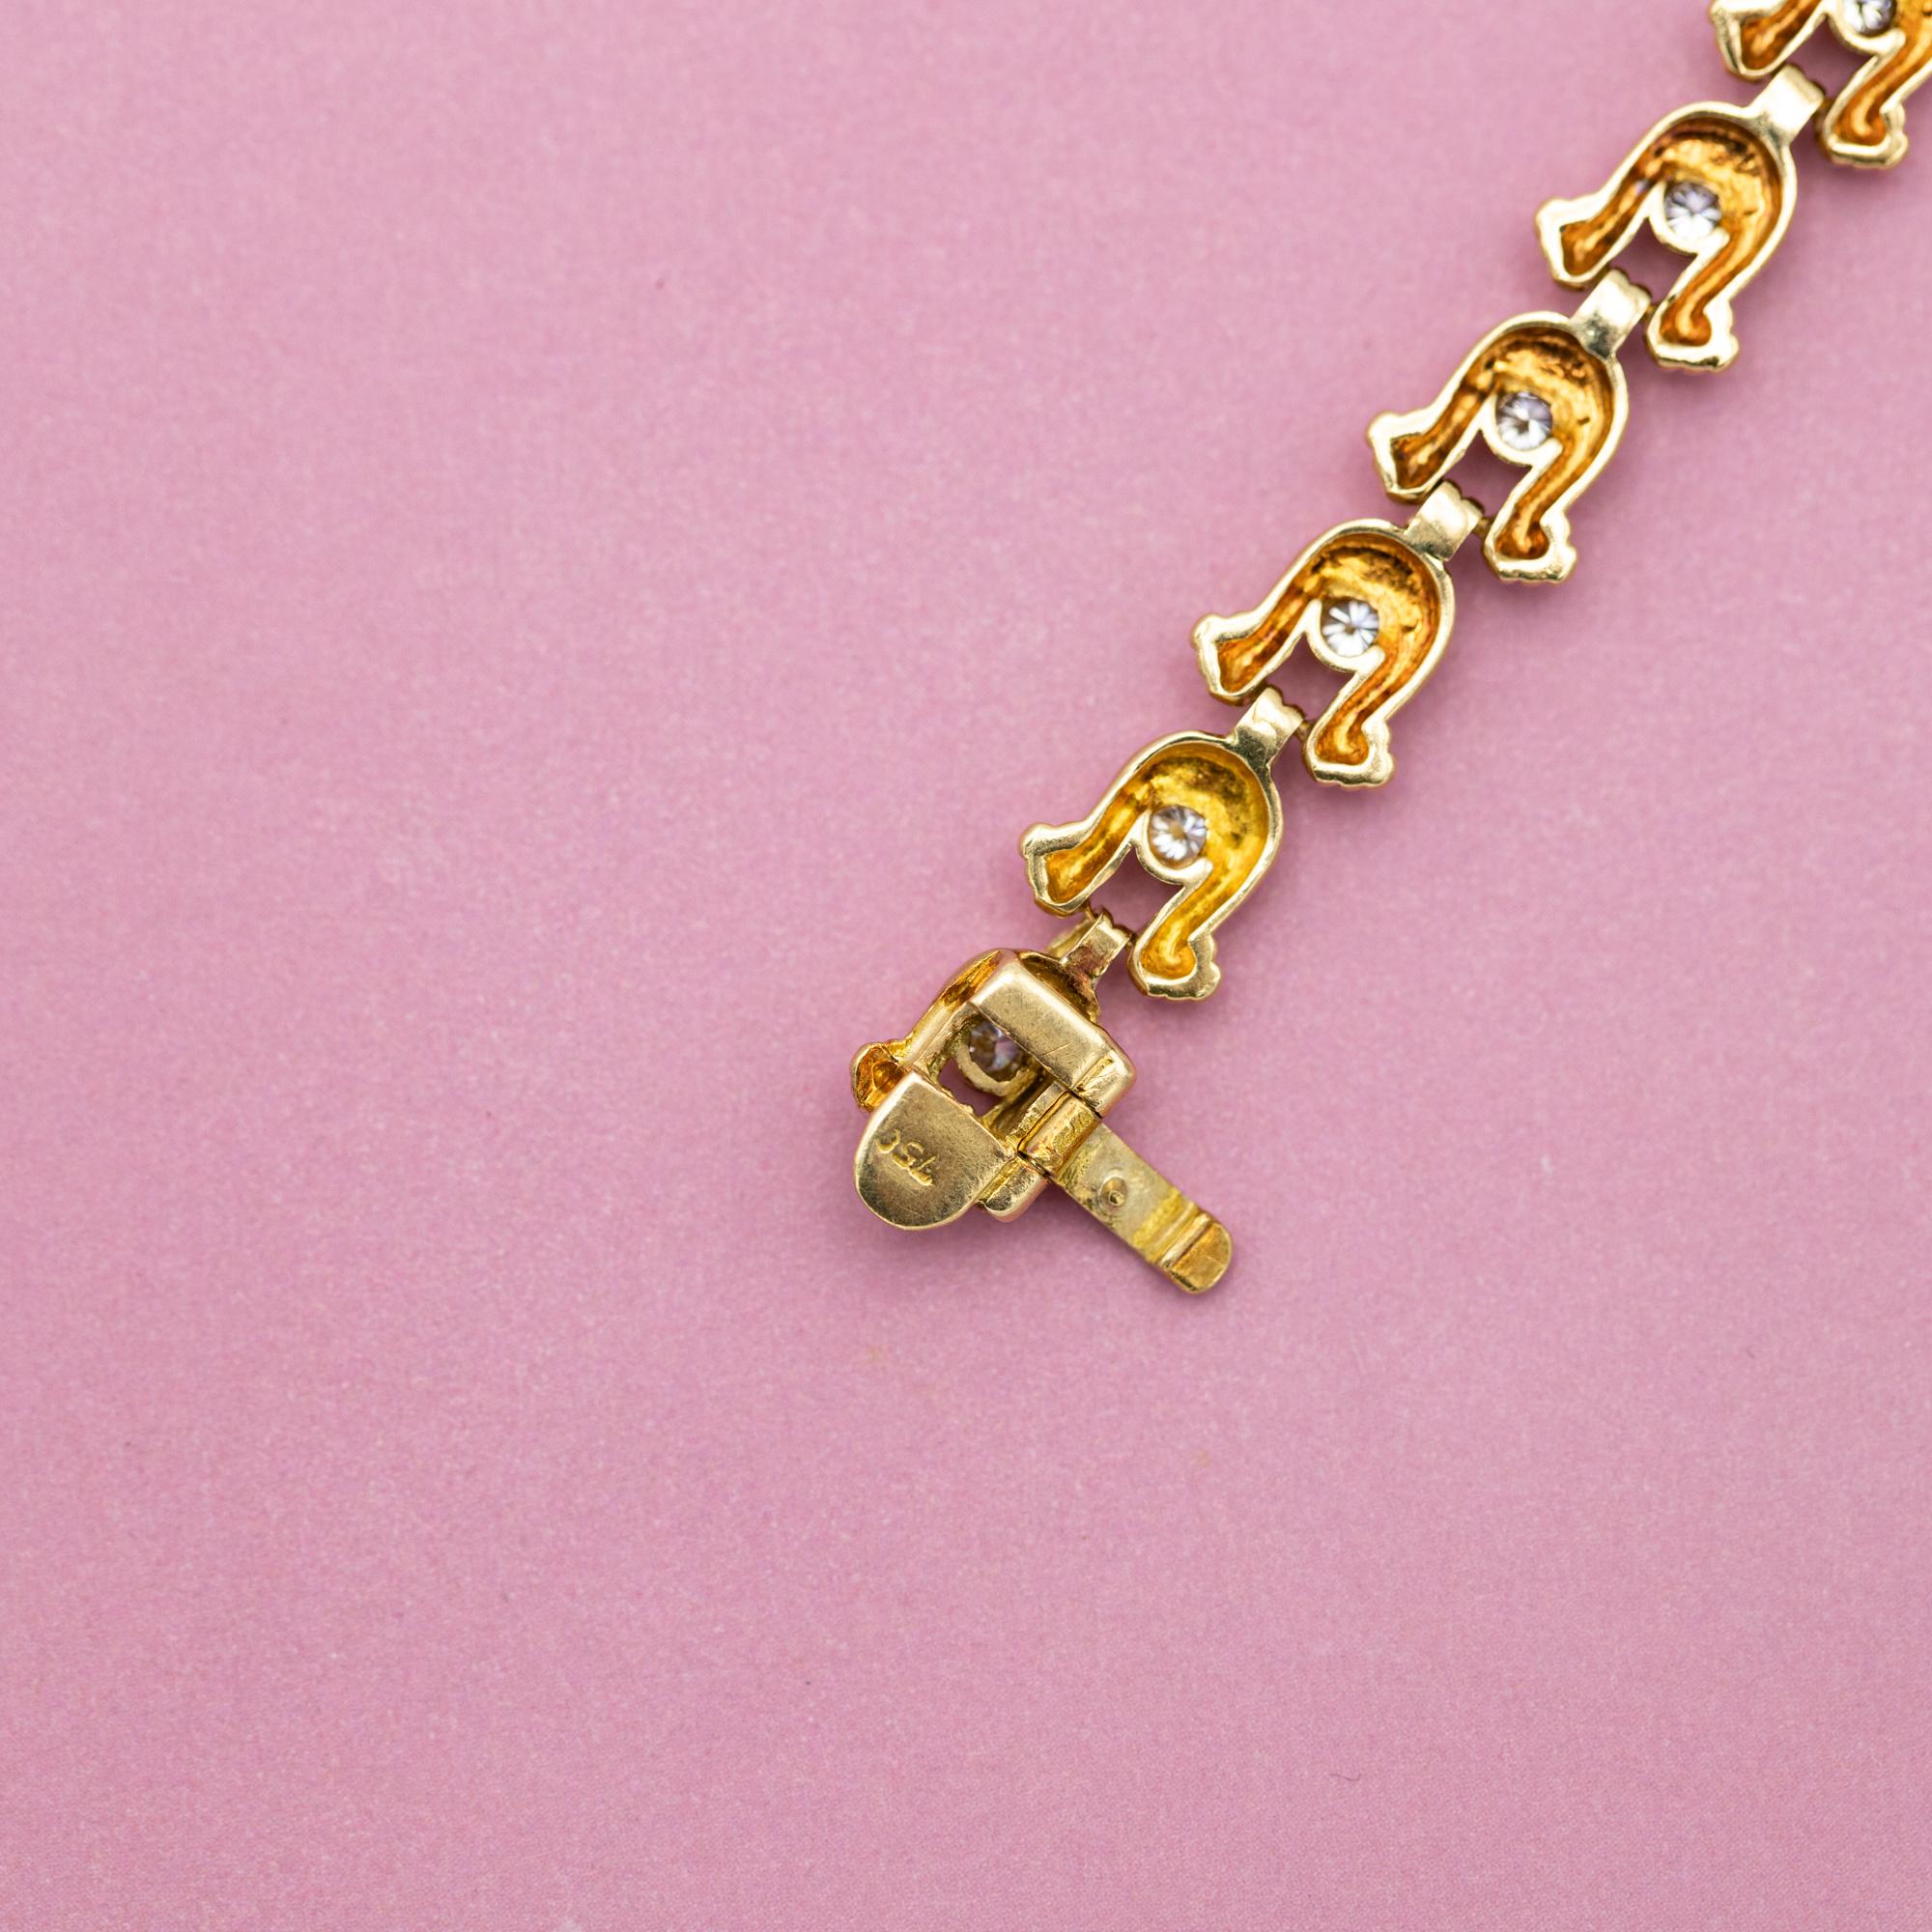 Bracelet tennis vintage en or jaune - Chaussures de cheval - 12,5 g - 0,62 carat de diamants 2